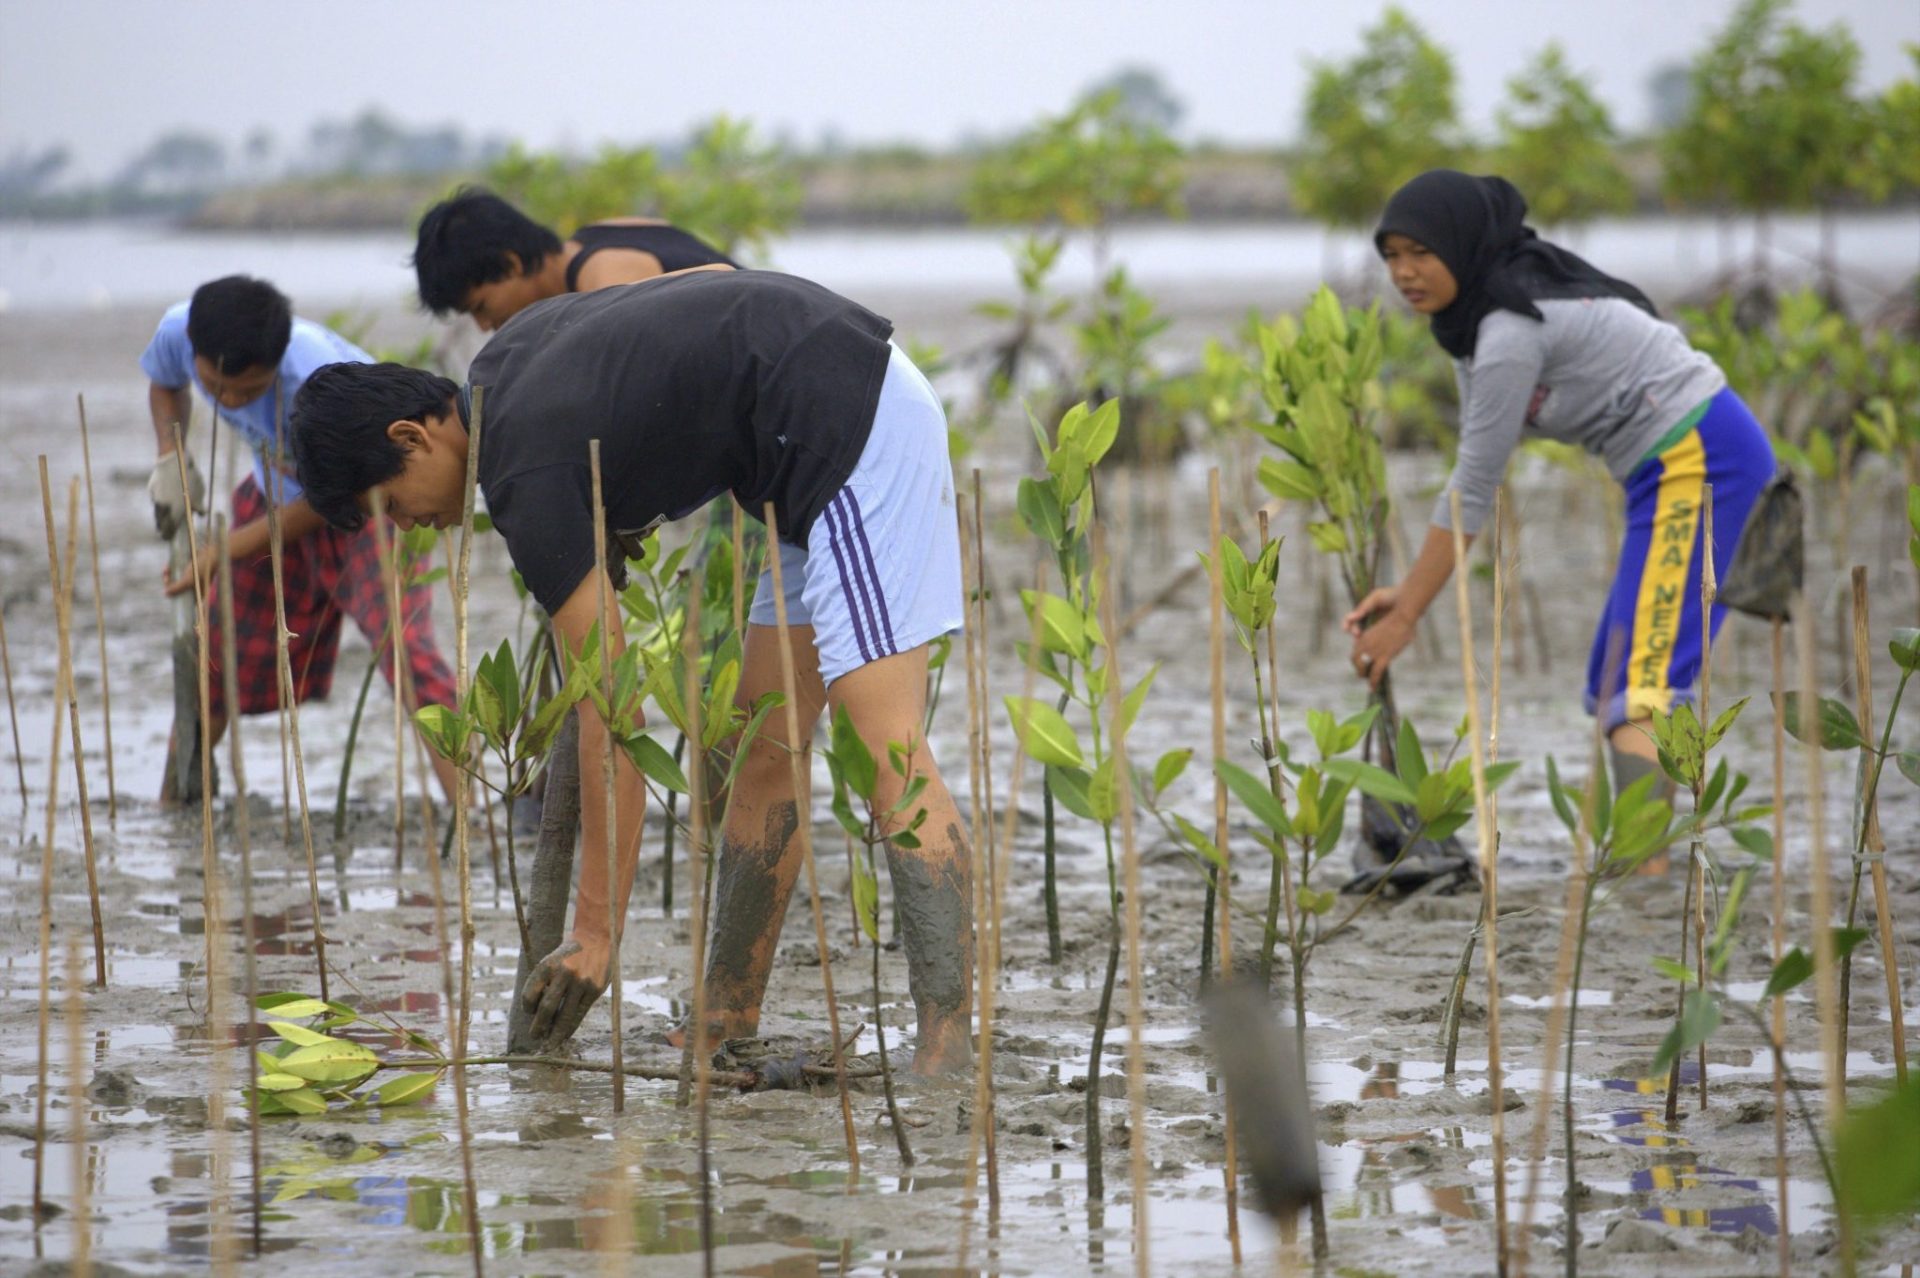 replantación en un manglar indonesio